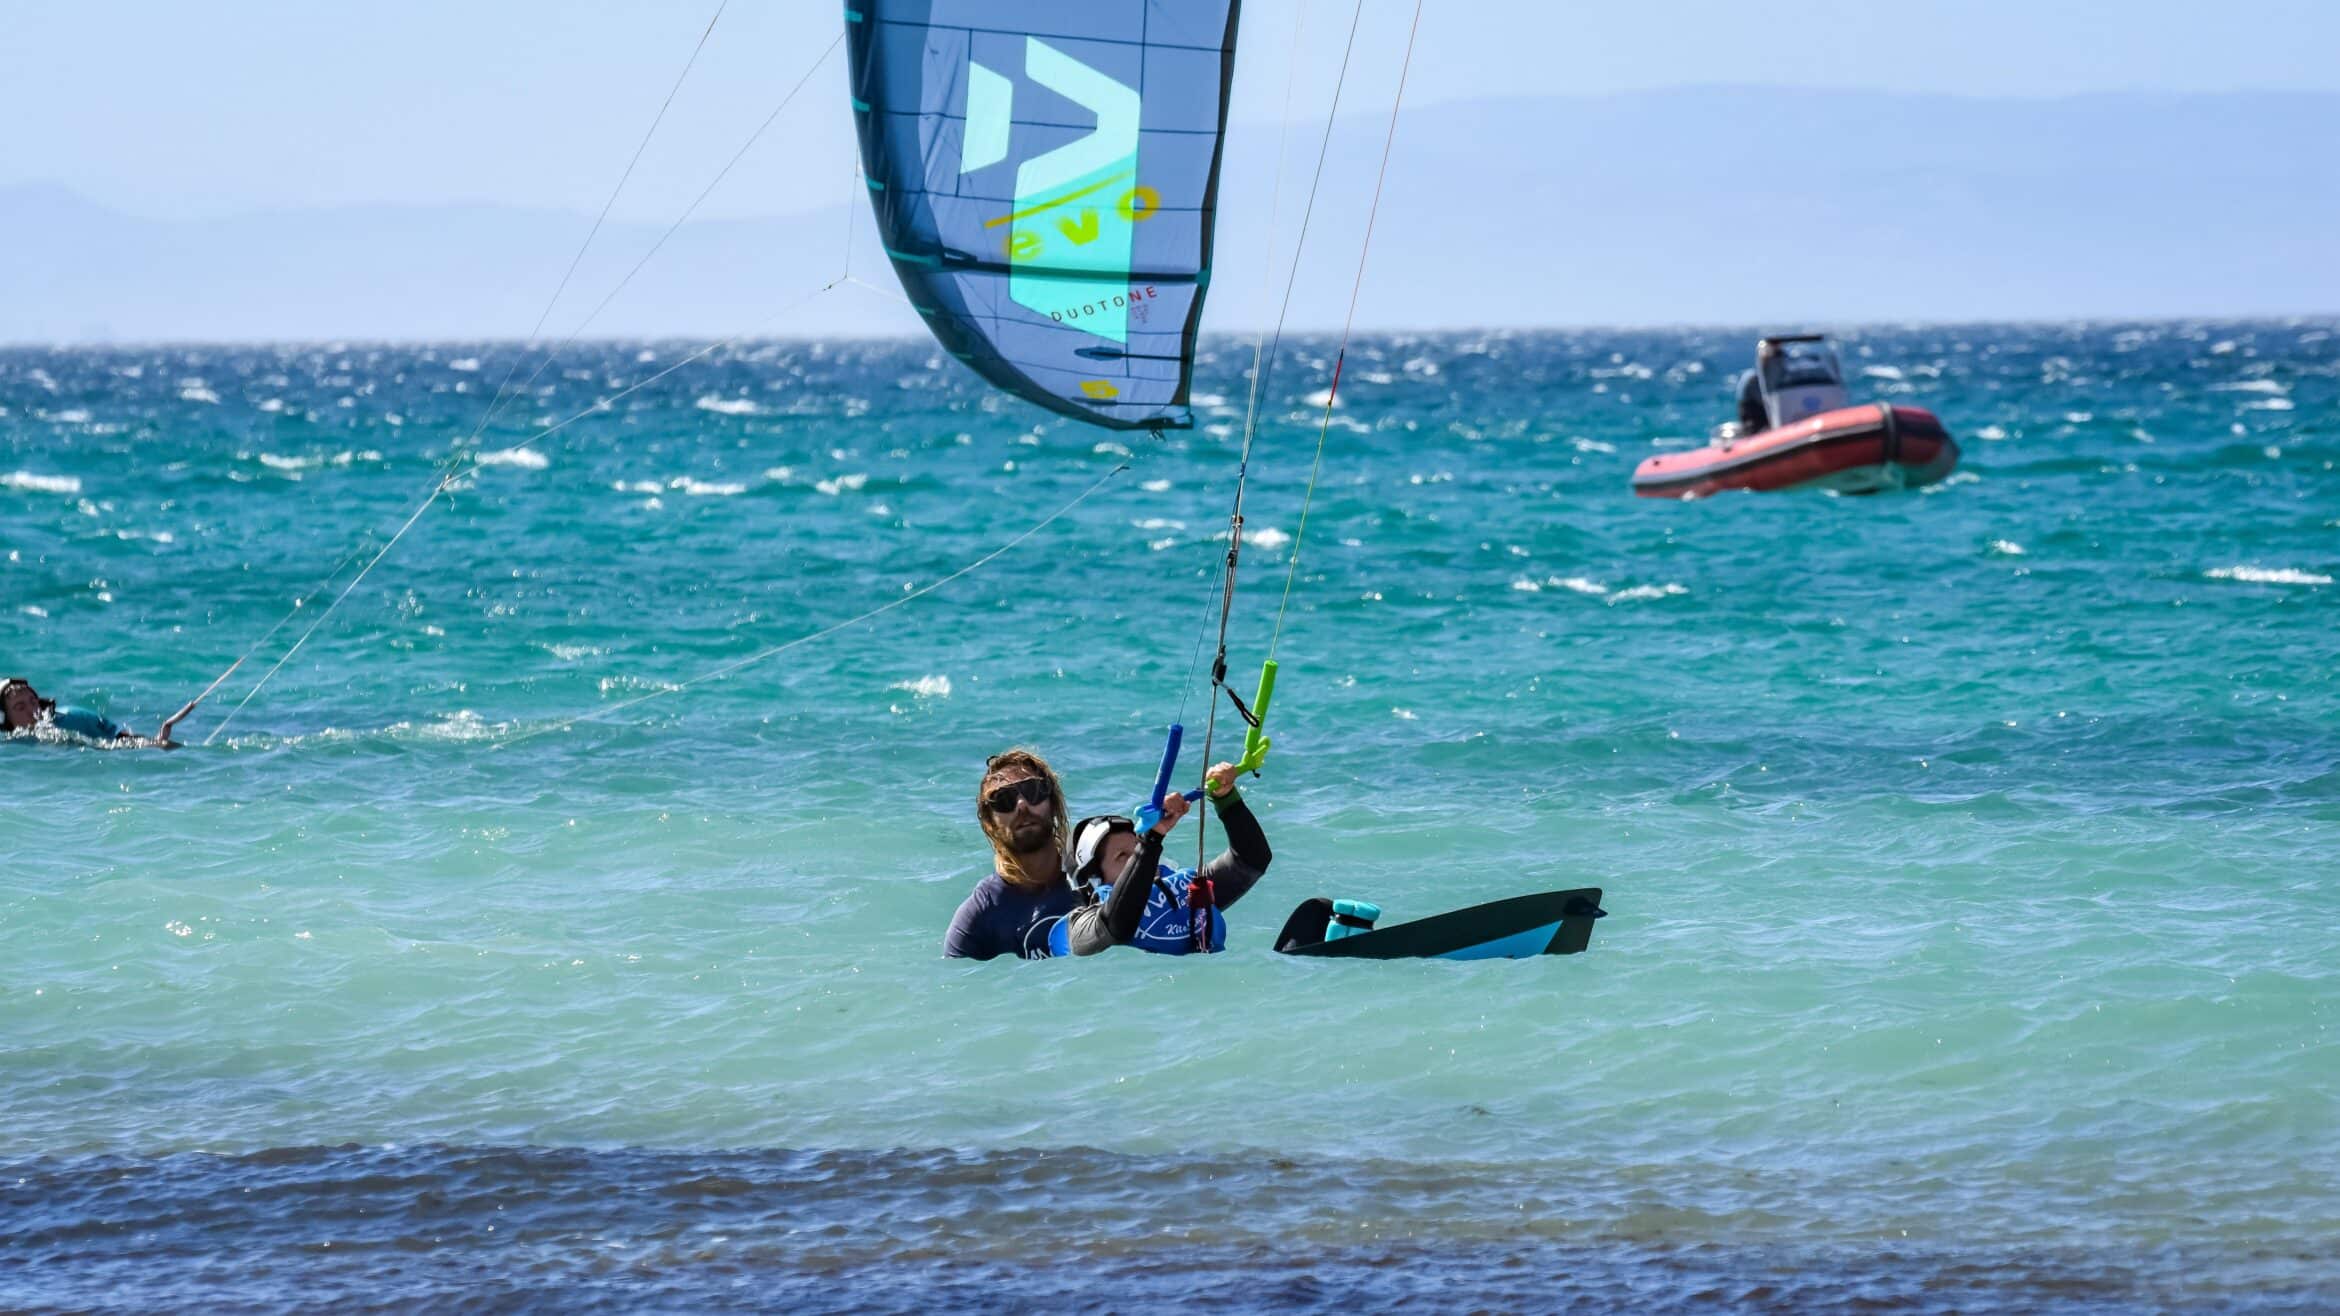 Kitesurflessen in Tarifa de waterstart in kitesurfen